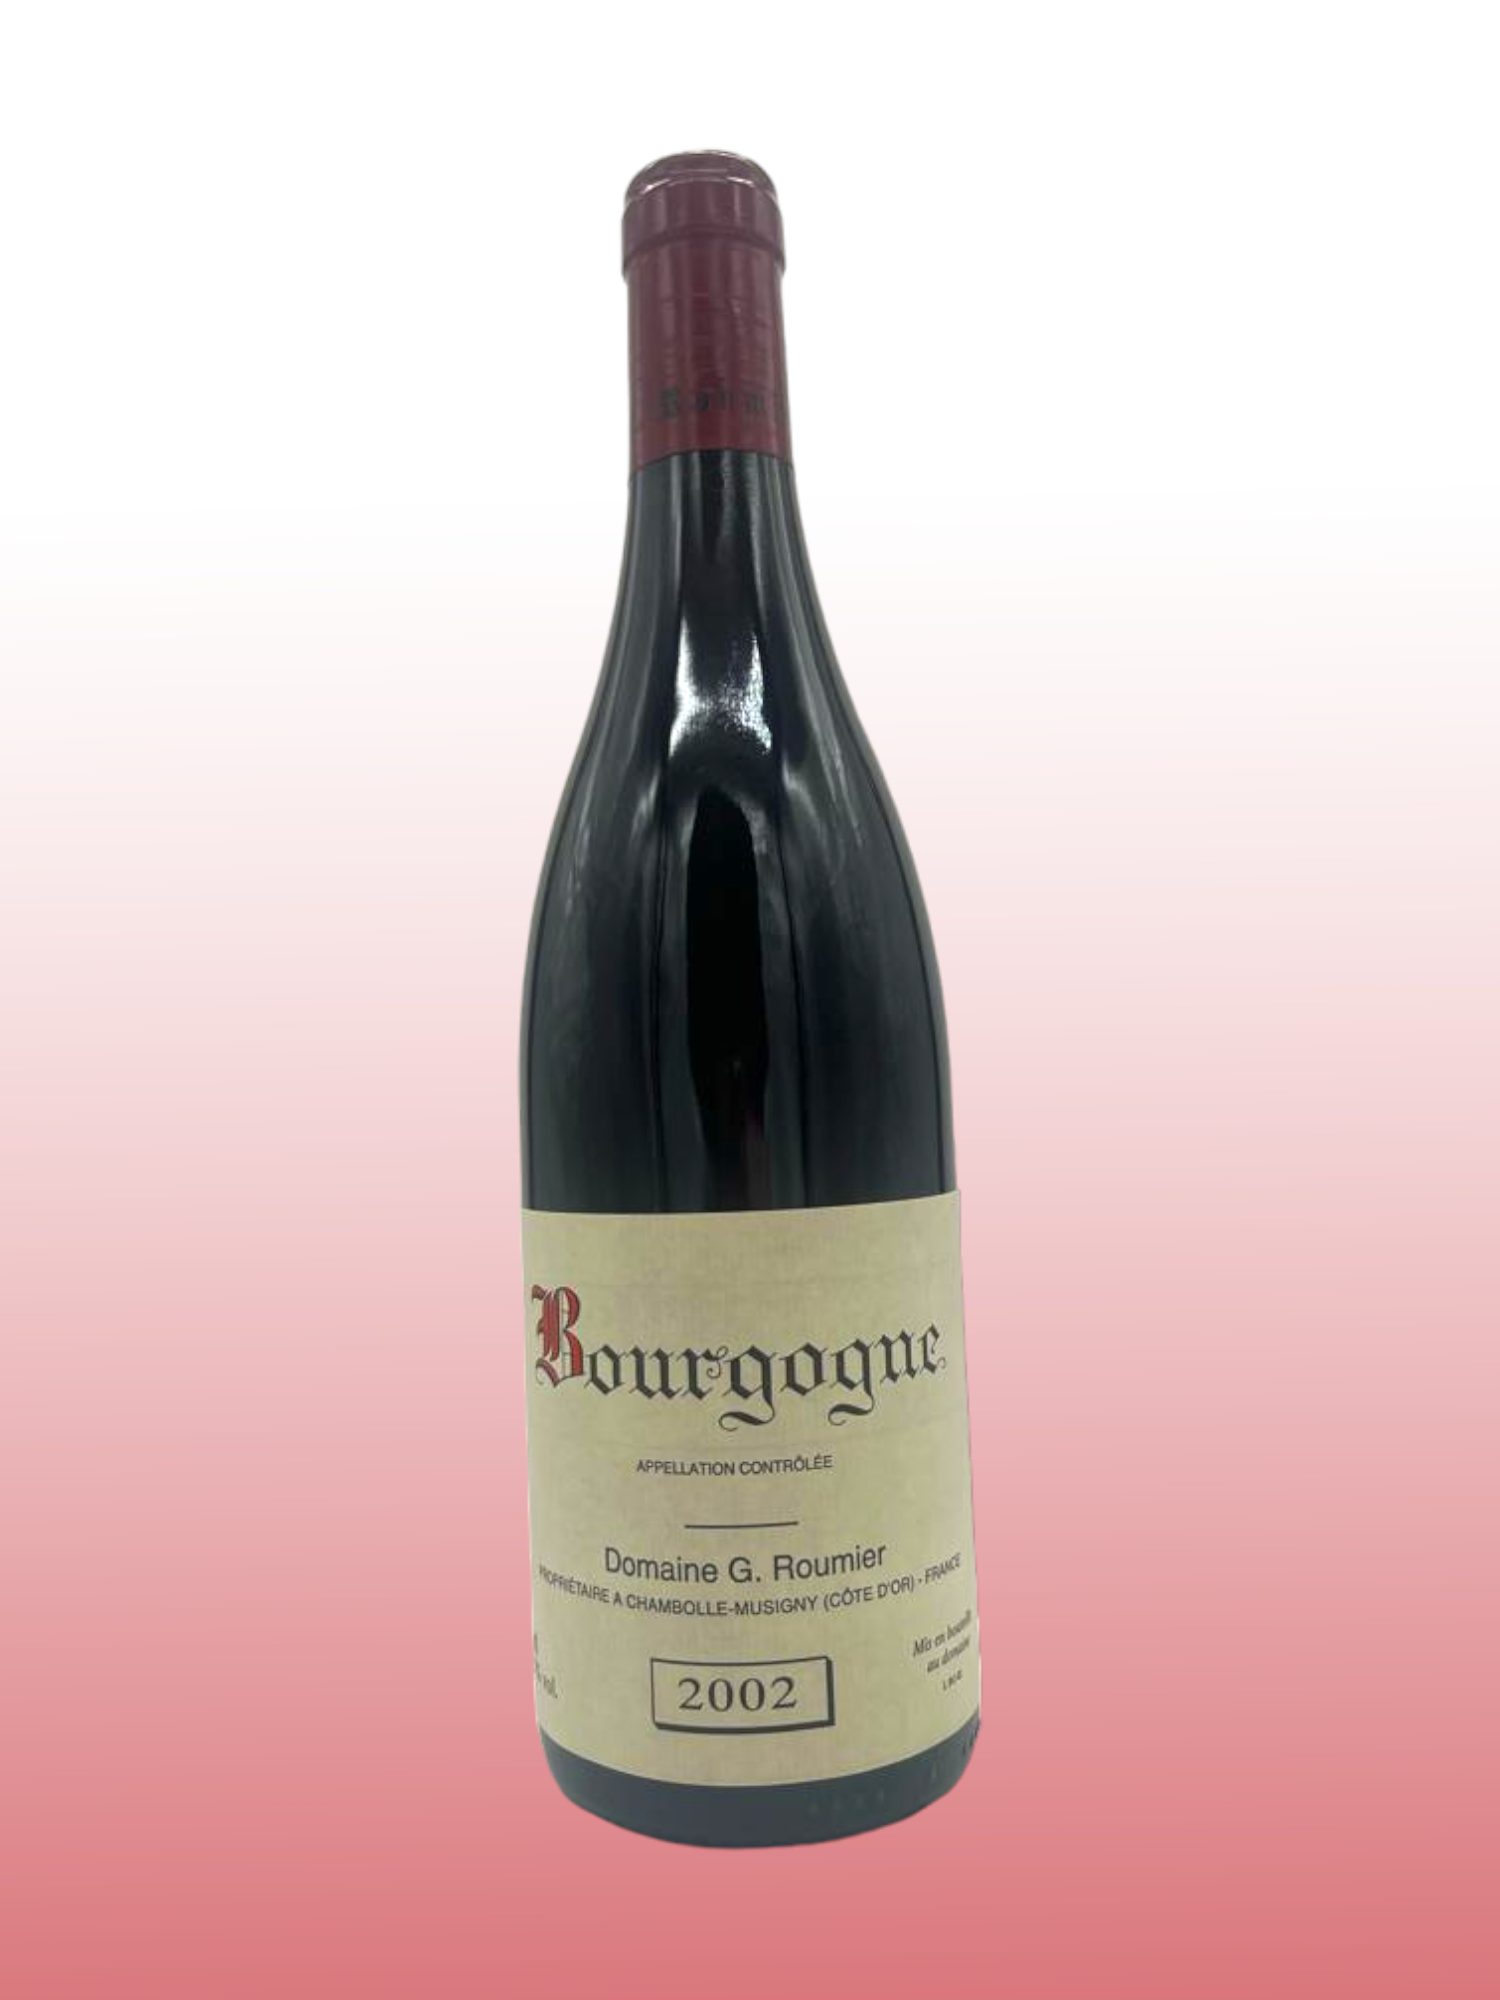 2002 Bourgogne Pinot Noir
